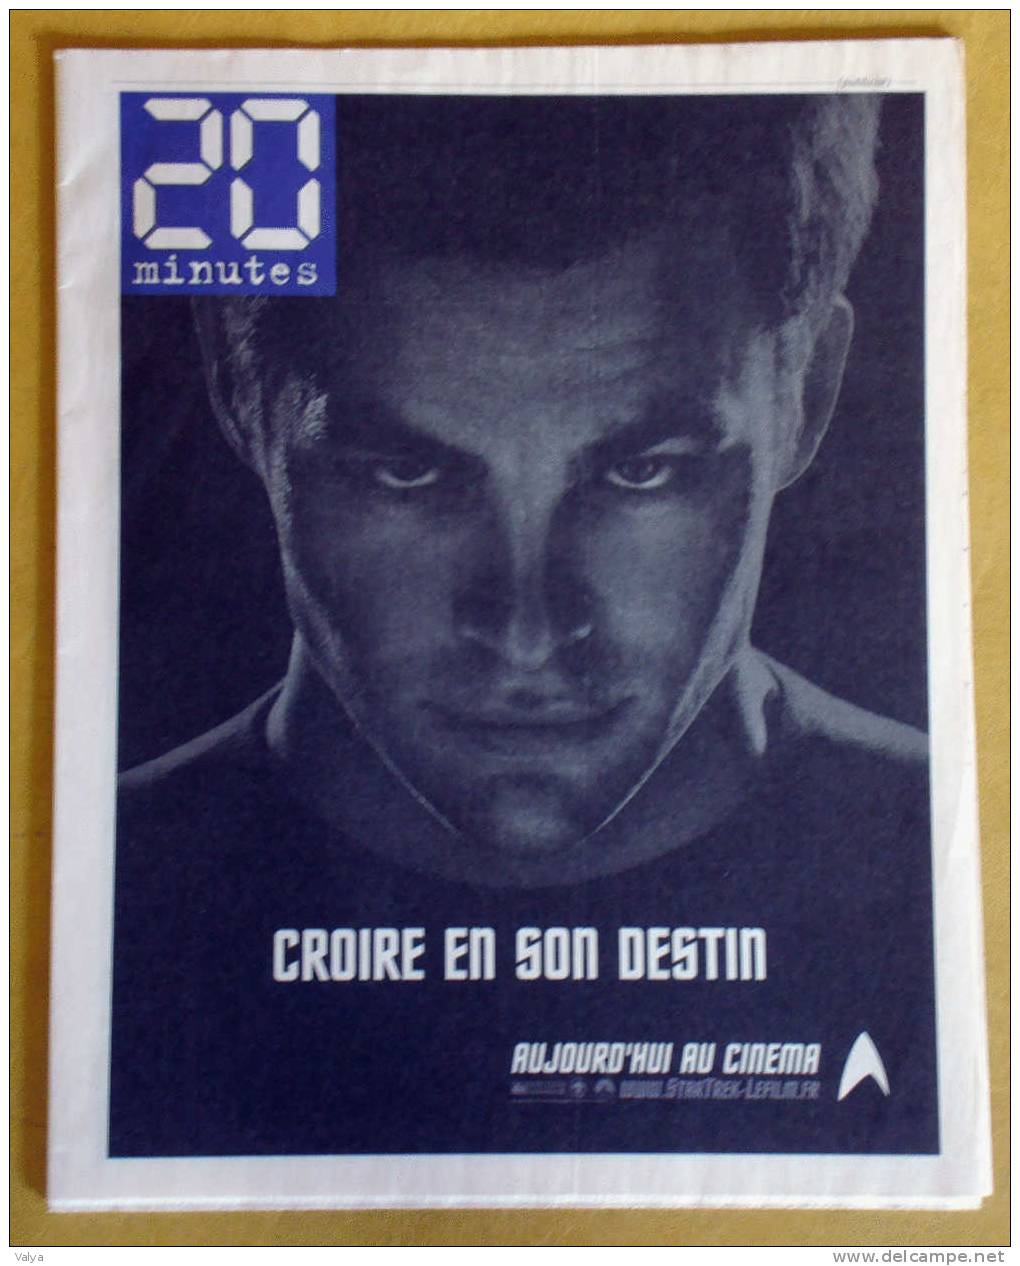 Publicités Pour La Sortie Du Film De STAR TREK Avec Daniel Craig Dans Le Journal 20 MINUTES - Publicidad